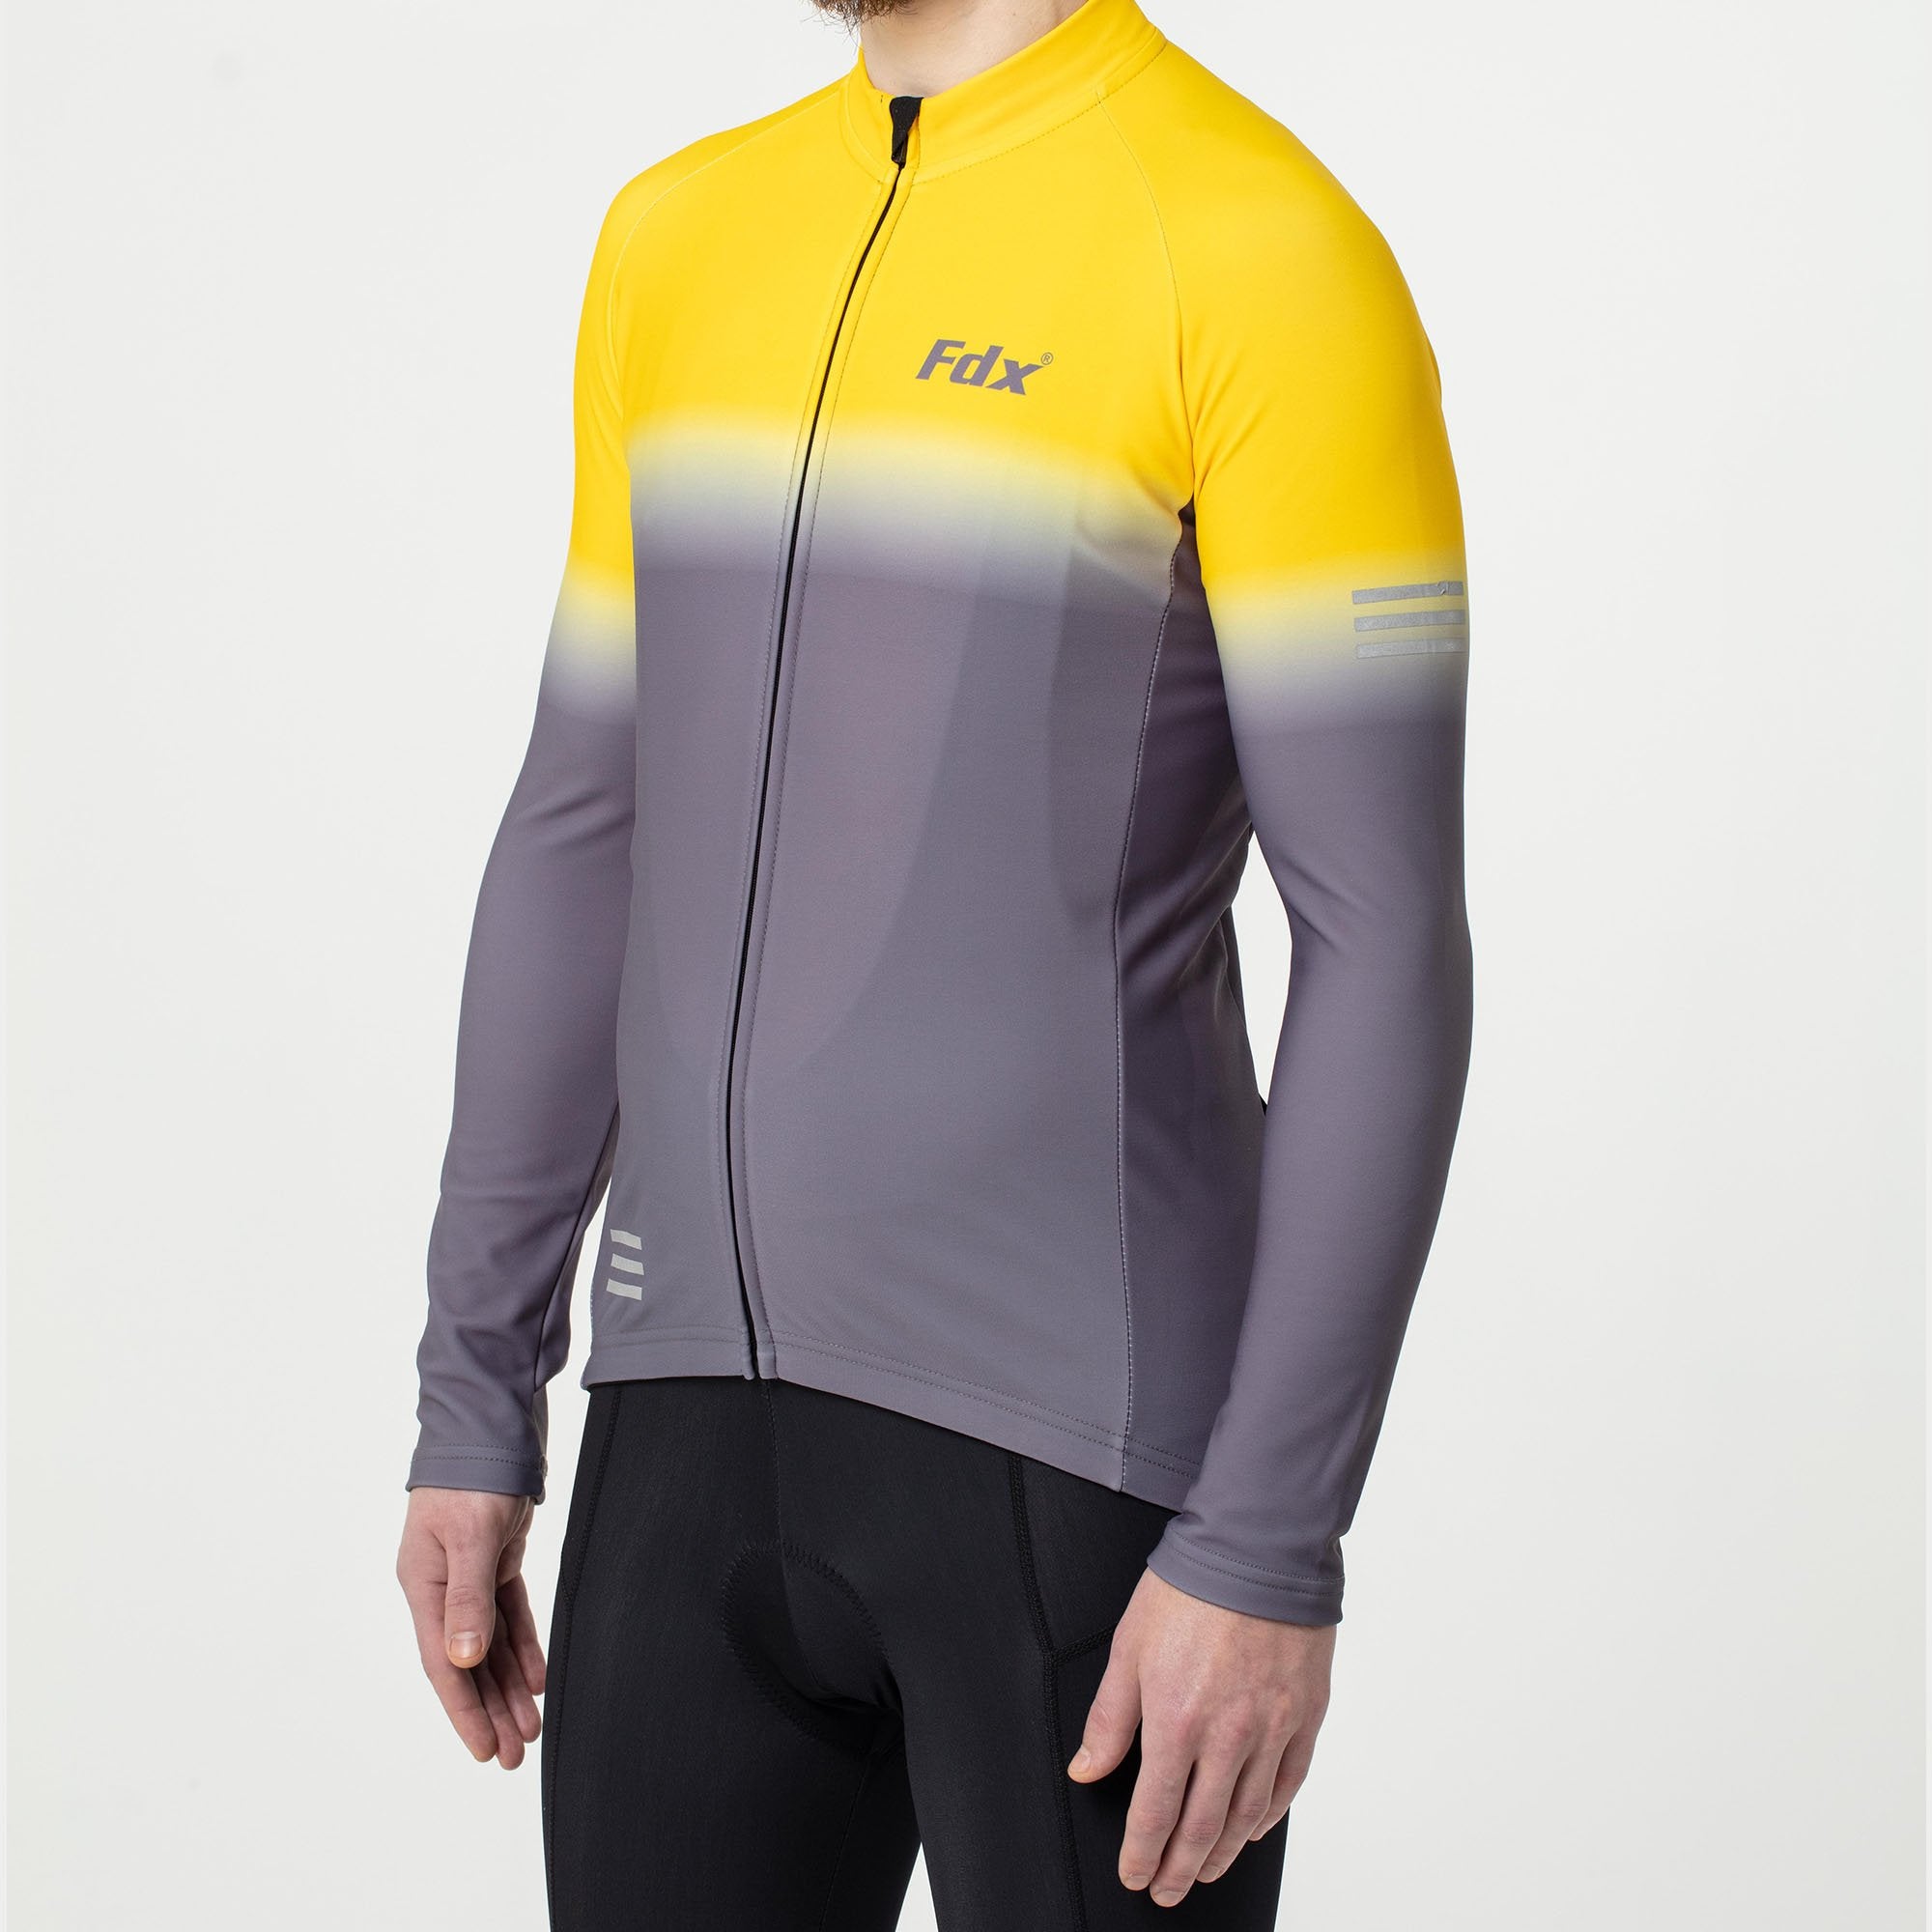 Fdx Duo Men's Yellow / Grey Thermal Roubaix Long Sleeve Cycling Jersey